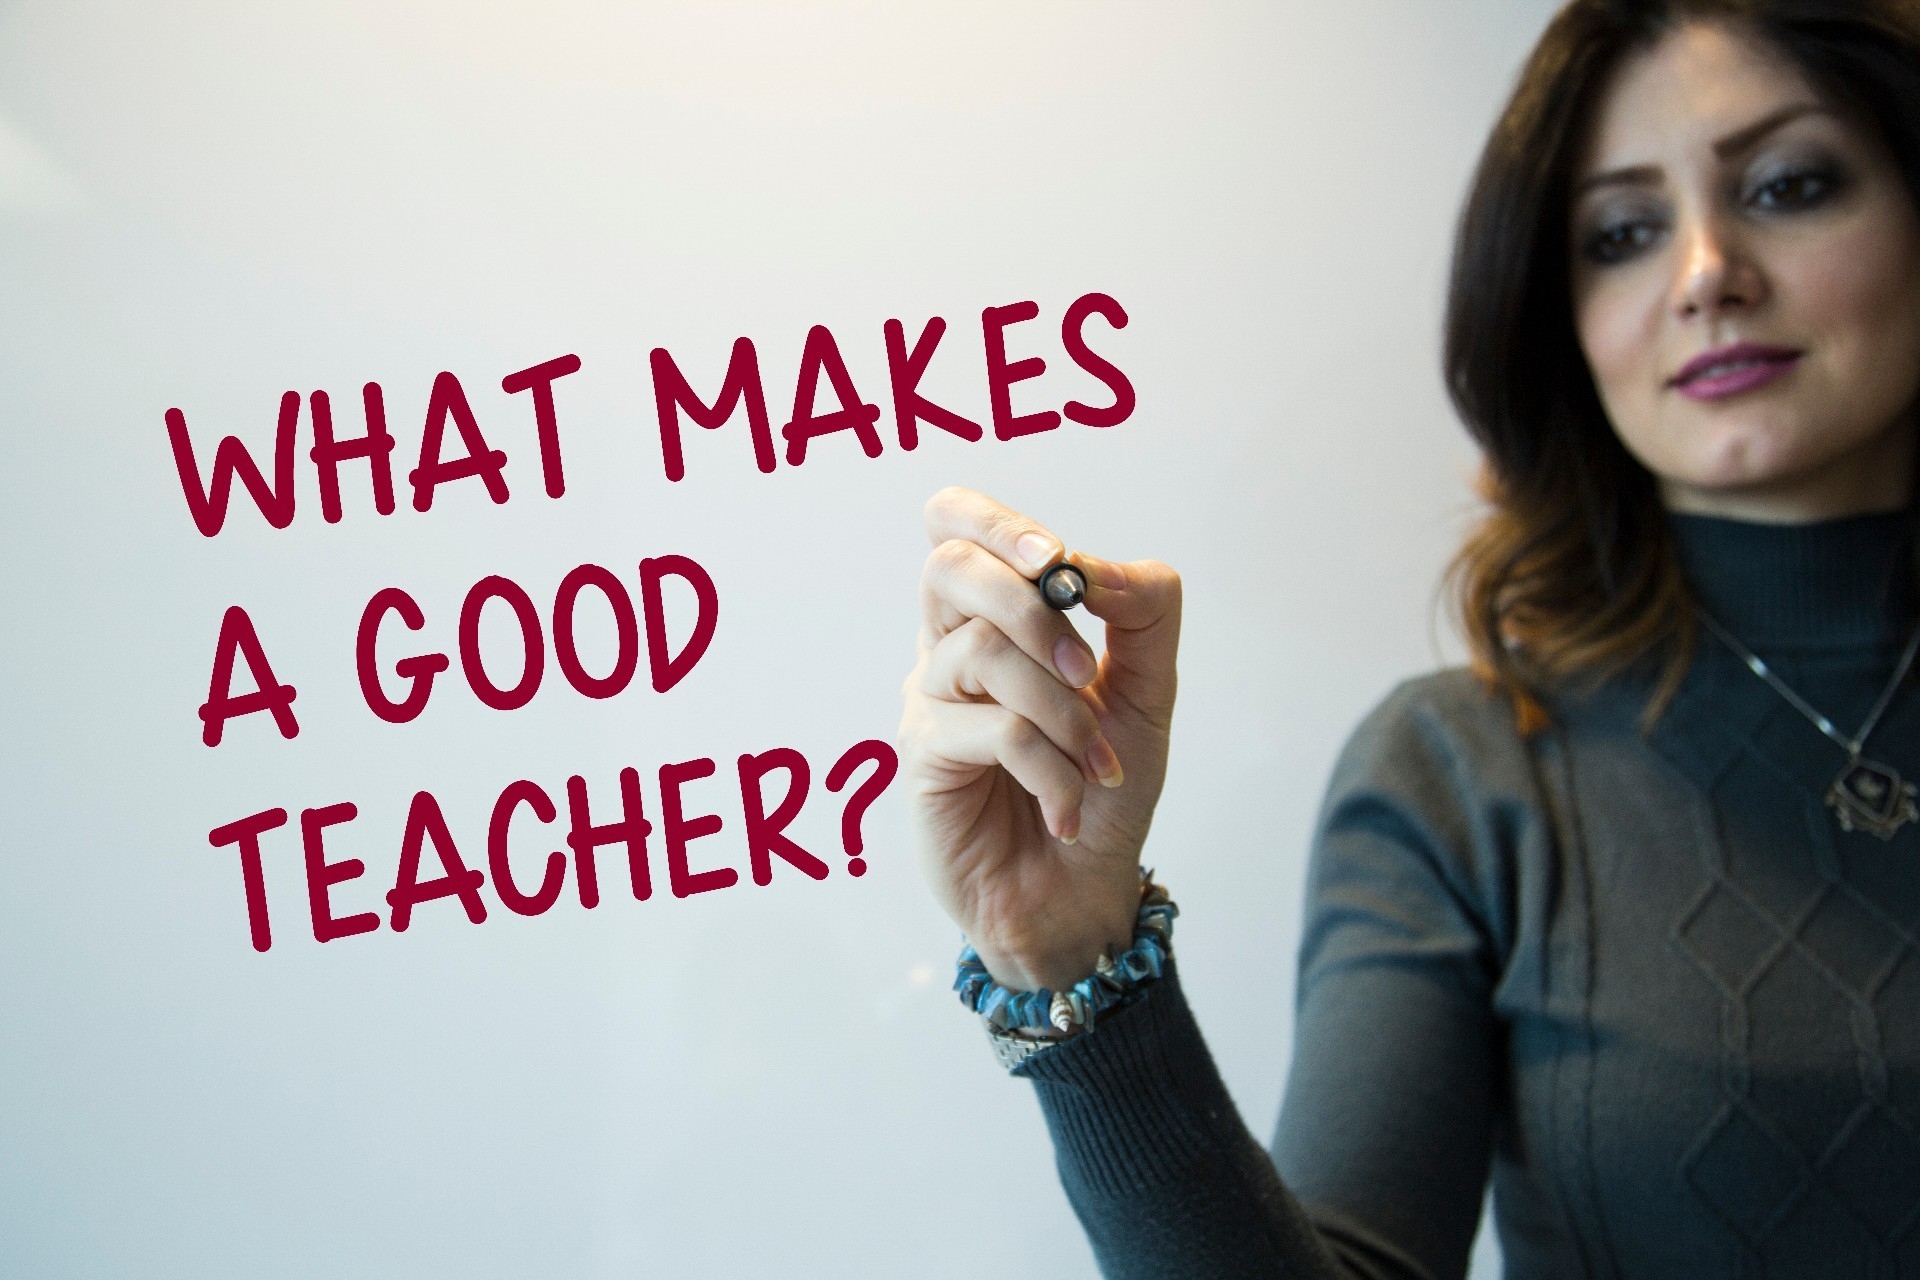 What makes a good teacher?